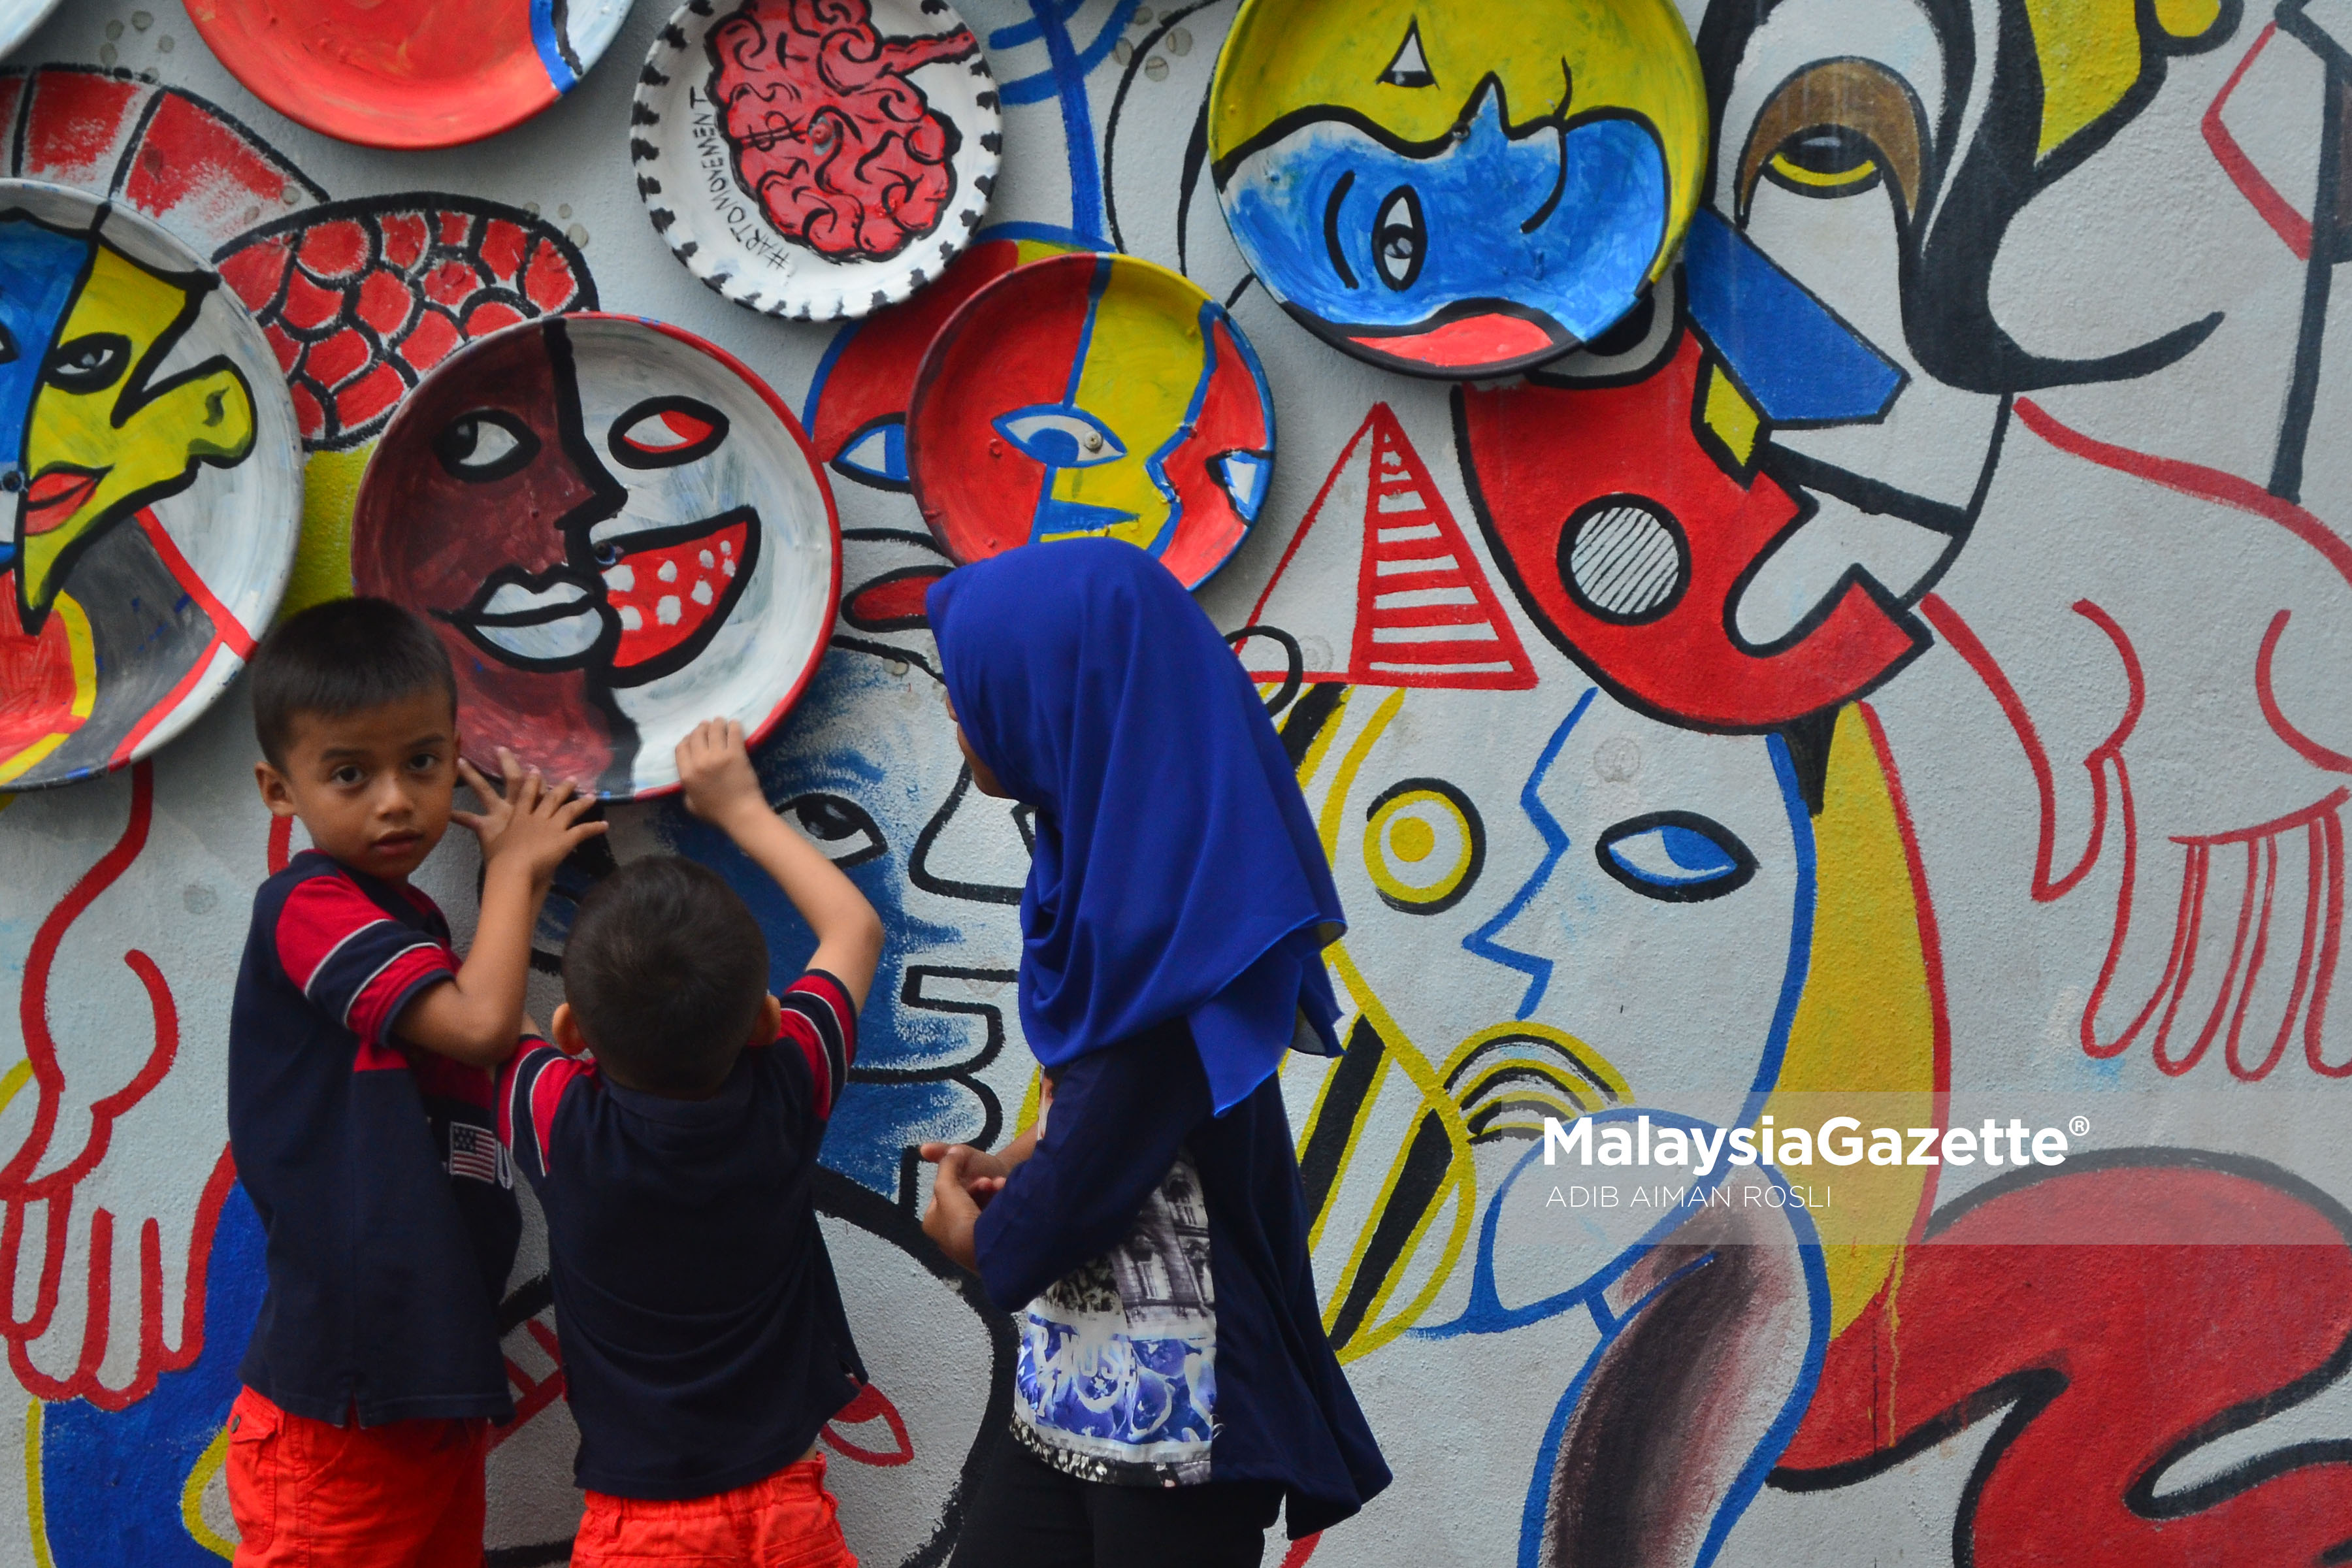 Gelagat tiga kanak-kanak bermain dengan pameran seni ketika tinjauan lensa Malaysia Gazette di Laman Seni 7, Shah Alam, Selangor. foto ADIB AIMAN ROSLI, 01 FEBRUARI 2017